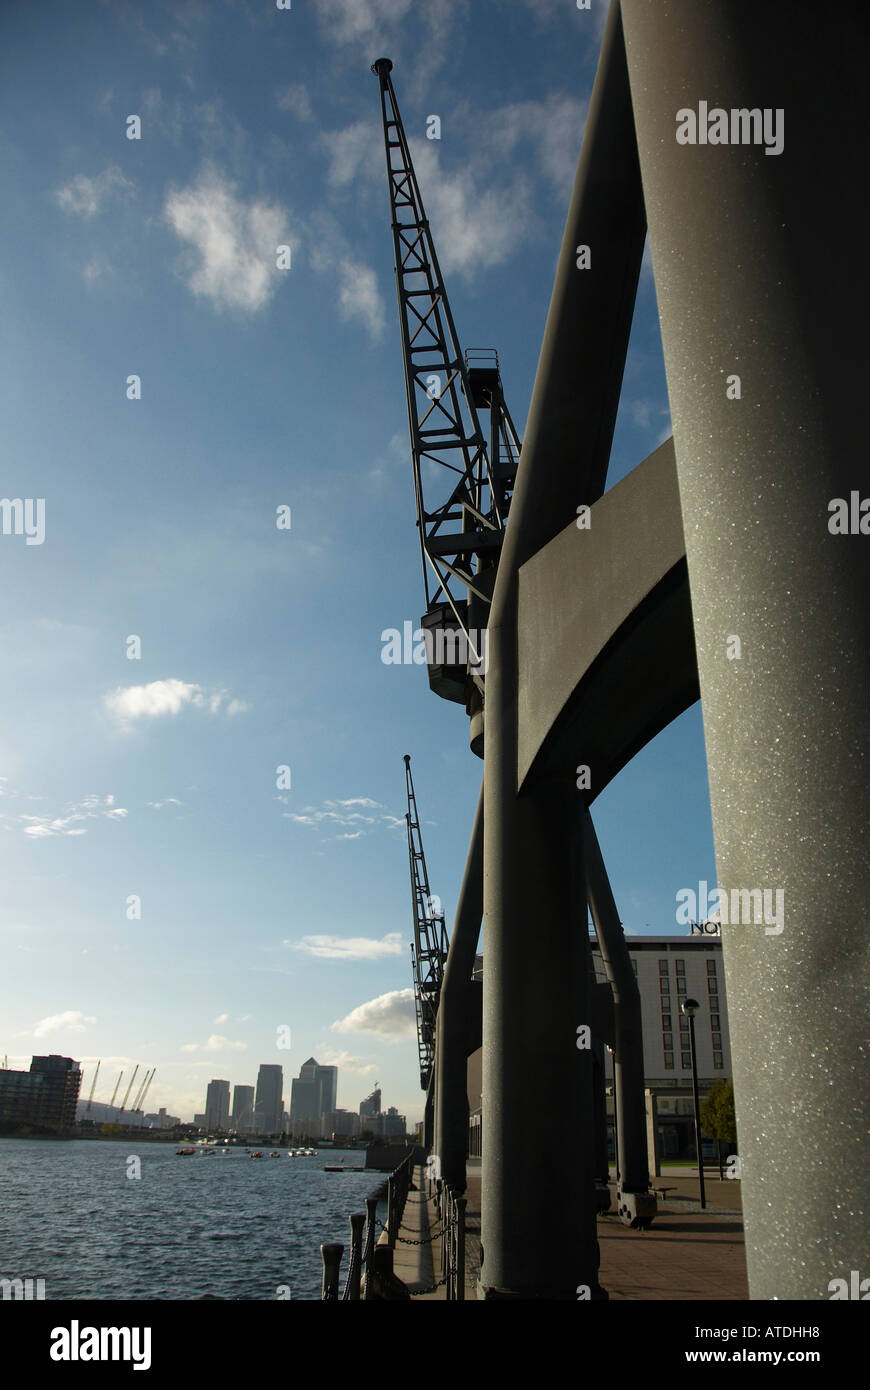 Cranes at Royal Victoria Docks, Londres Banque D'Images